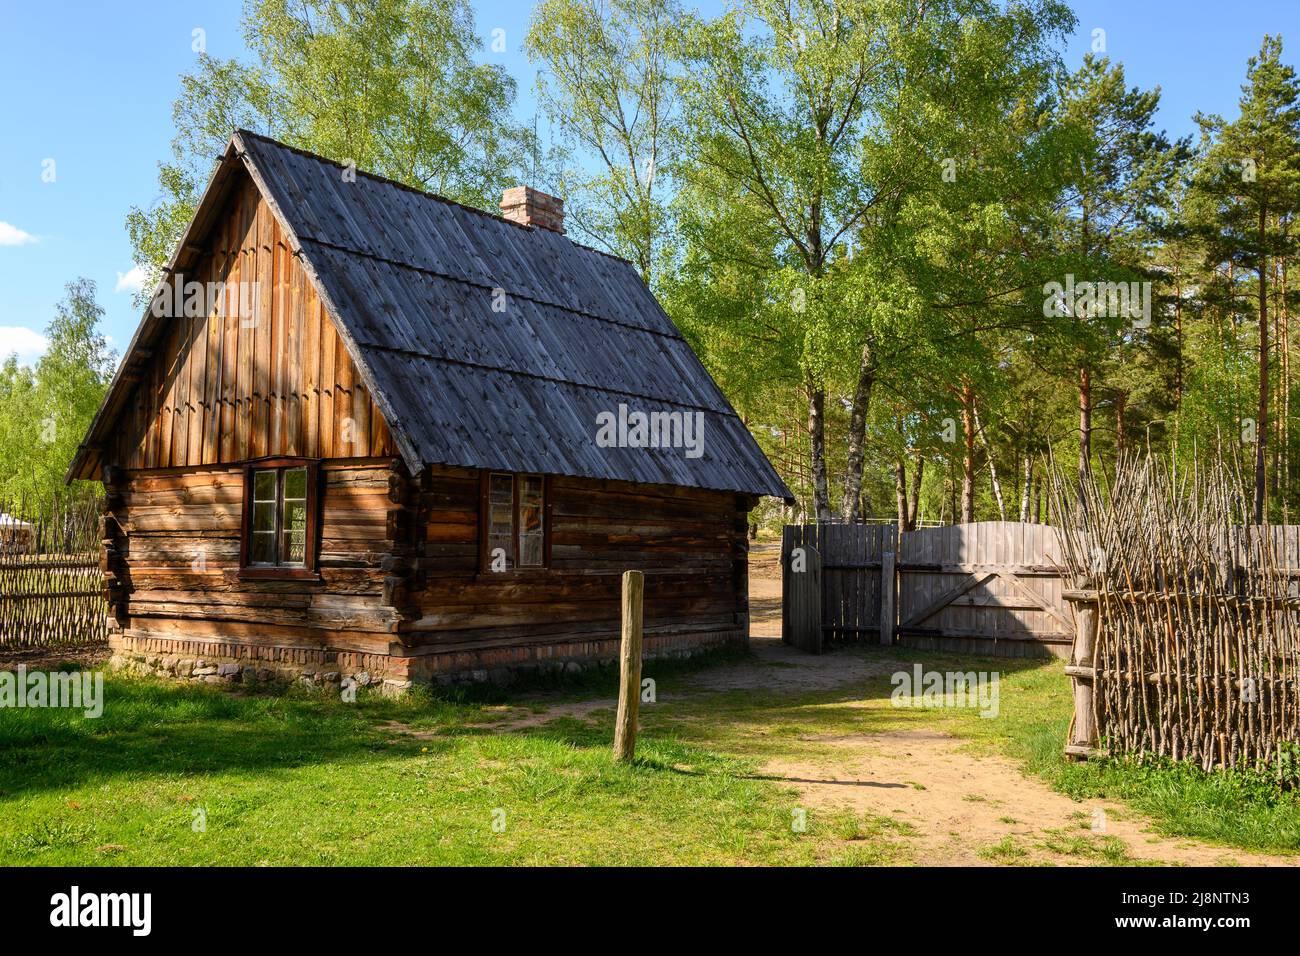 Wdzydze Kiszewskie, Poland - May 15, 2022: Wooden cottage in Kashubian Ethnographic Park in Wdzydze Kiszewskie Stock Photo